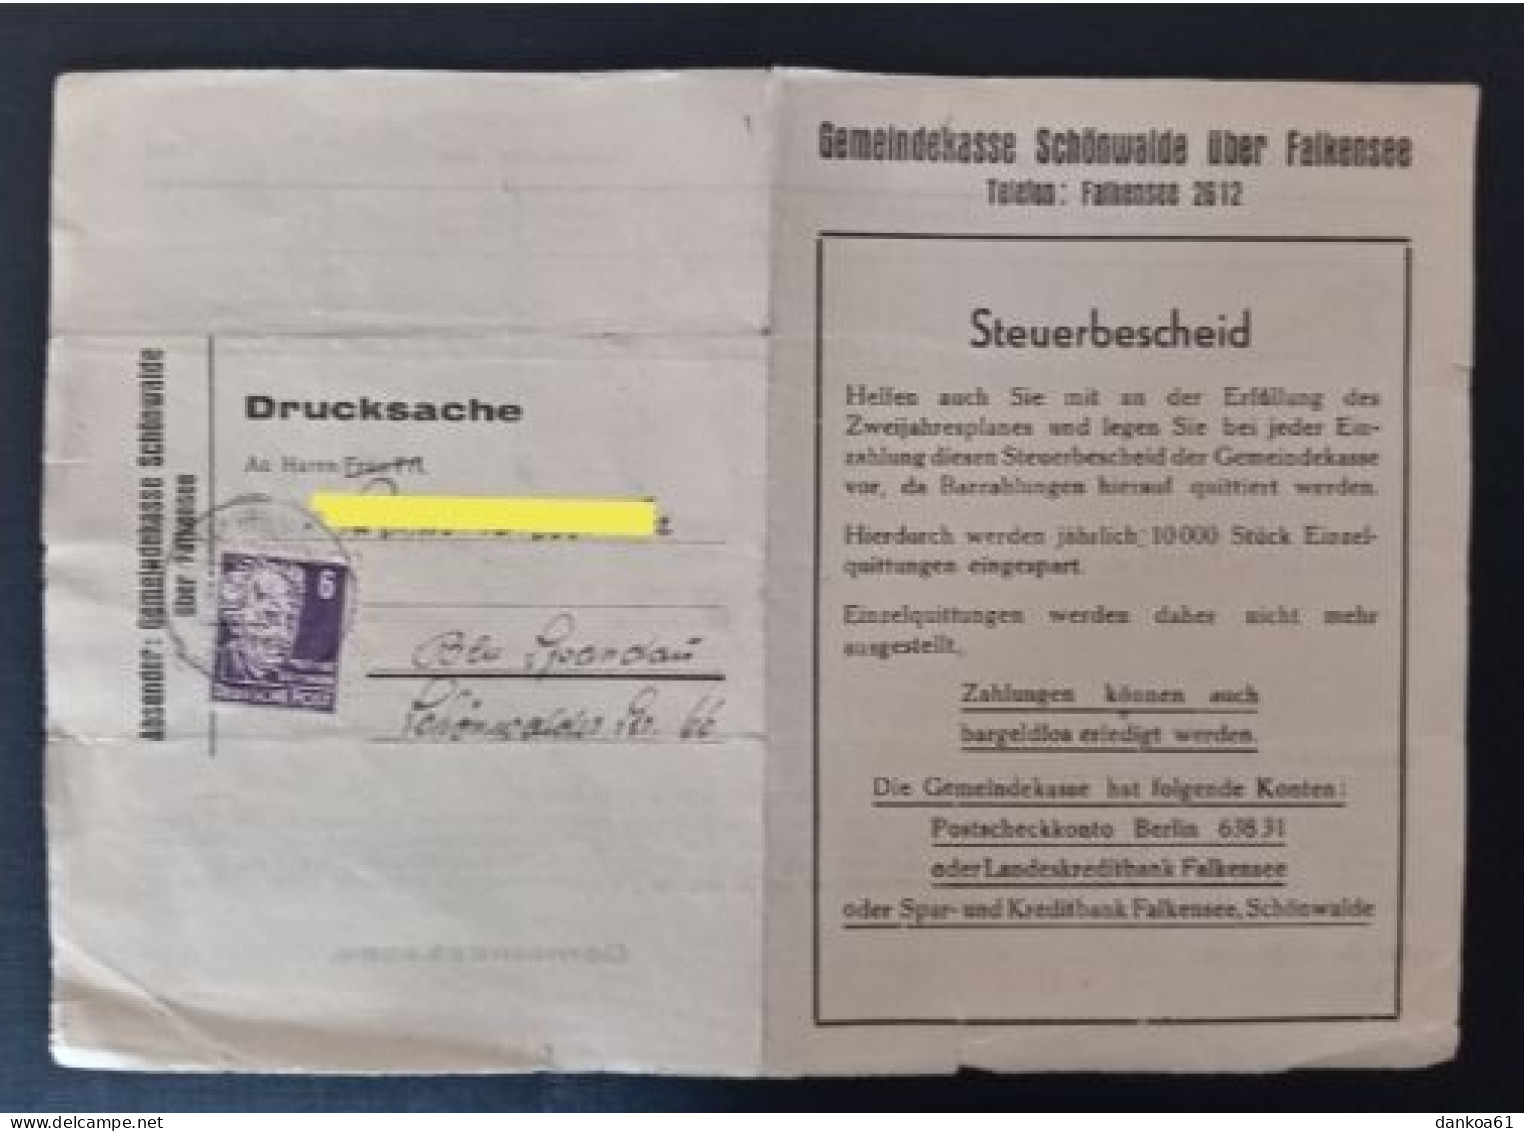 SBZ Gemeindekasse Schönwalde über Falkensee Nach Berlin Spandau 17.6.49. - Briefe U. Dokumente